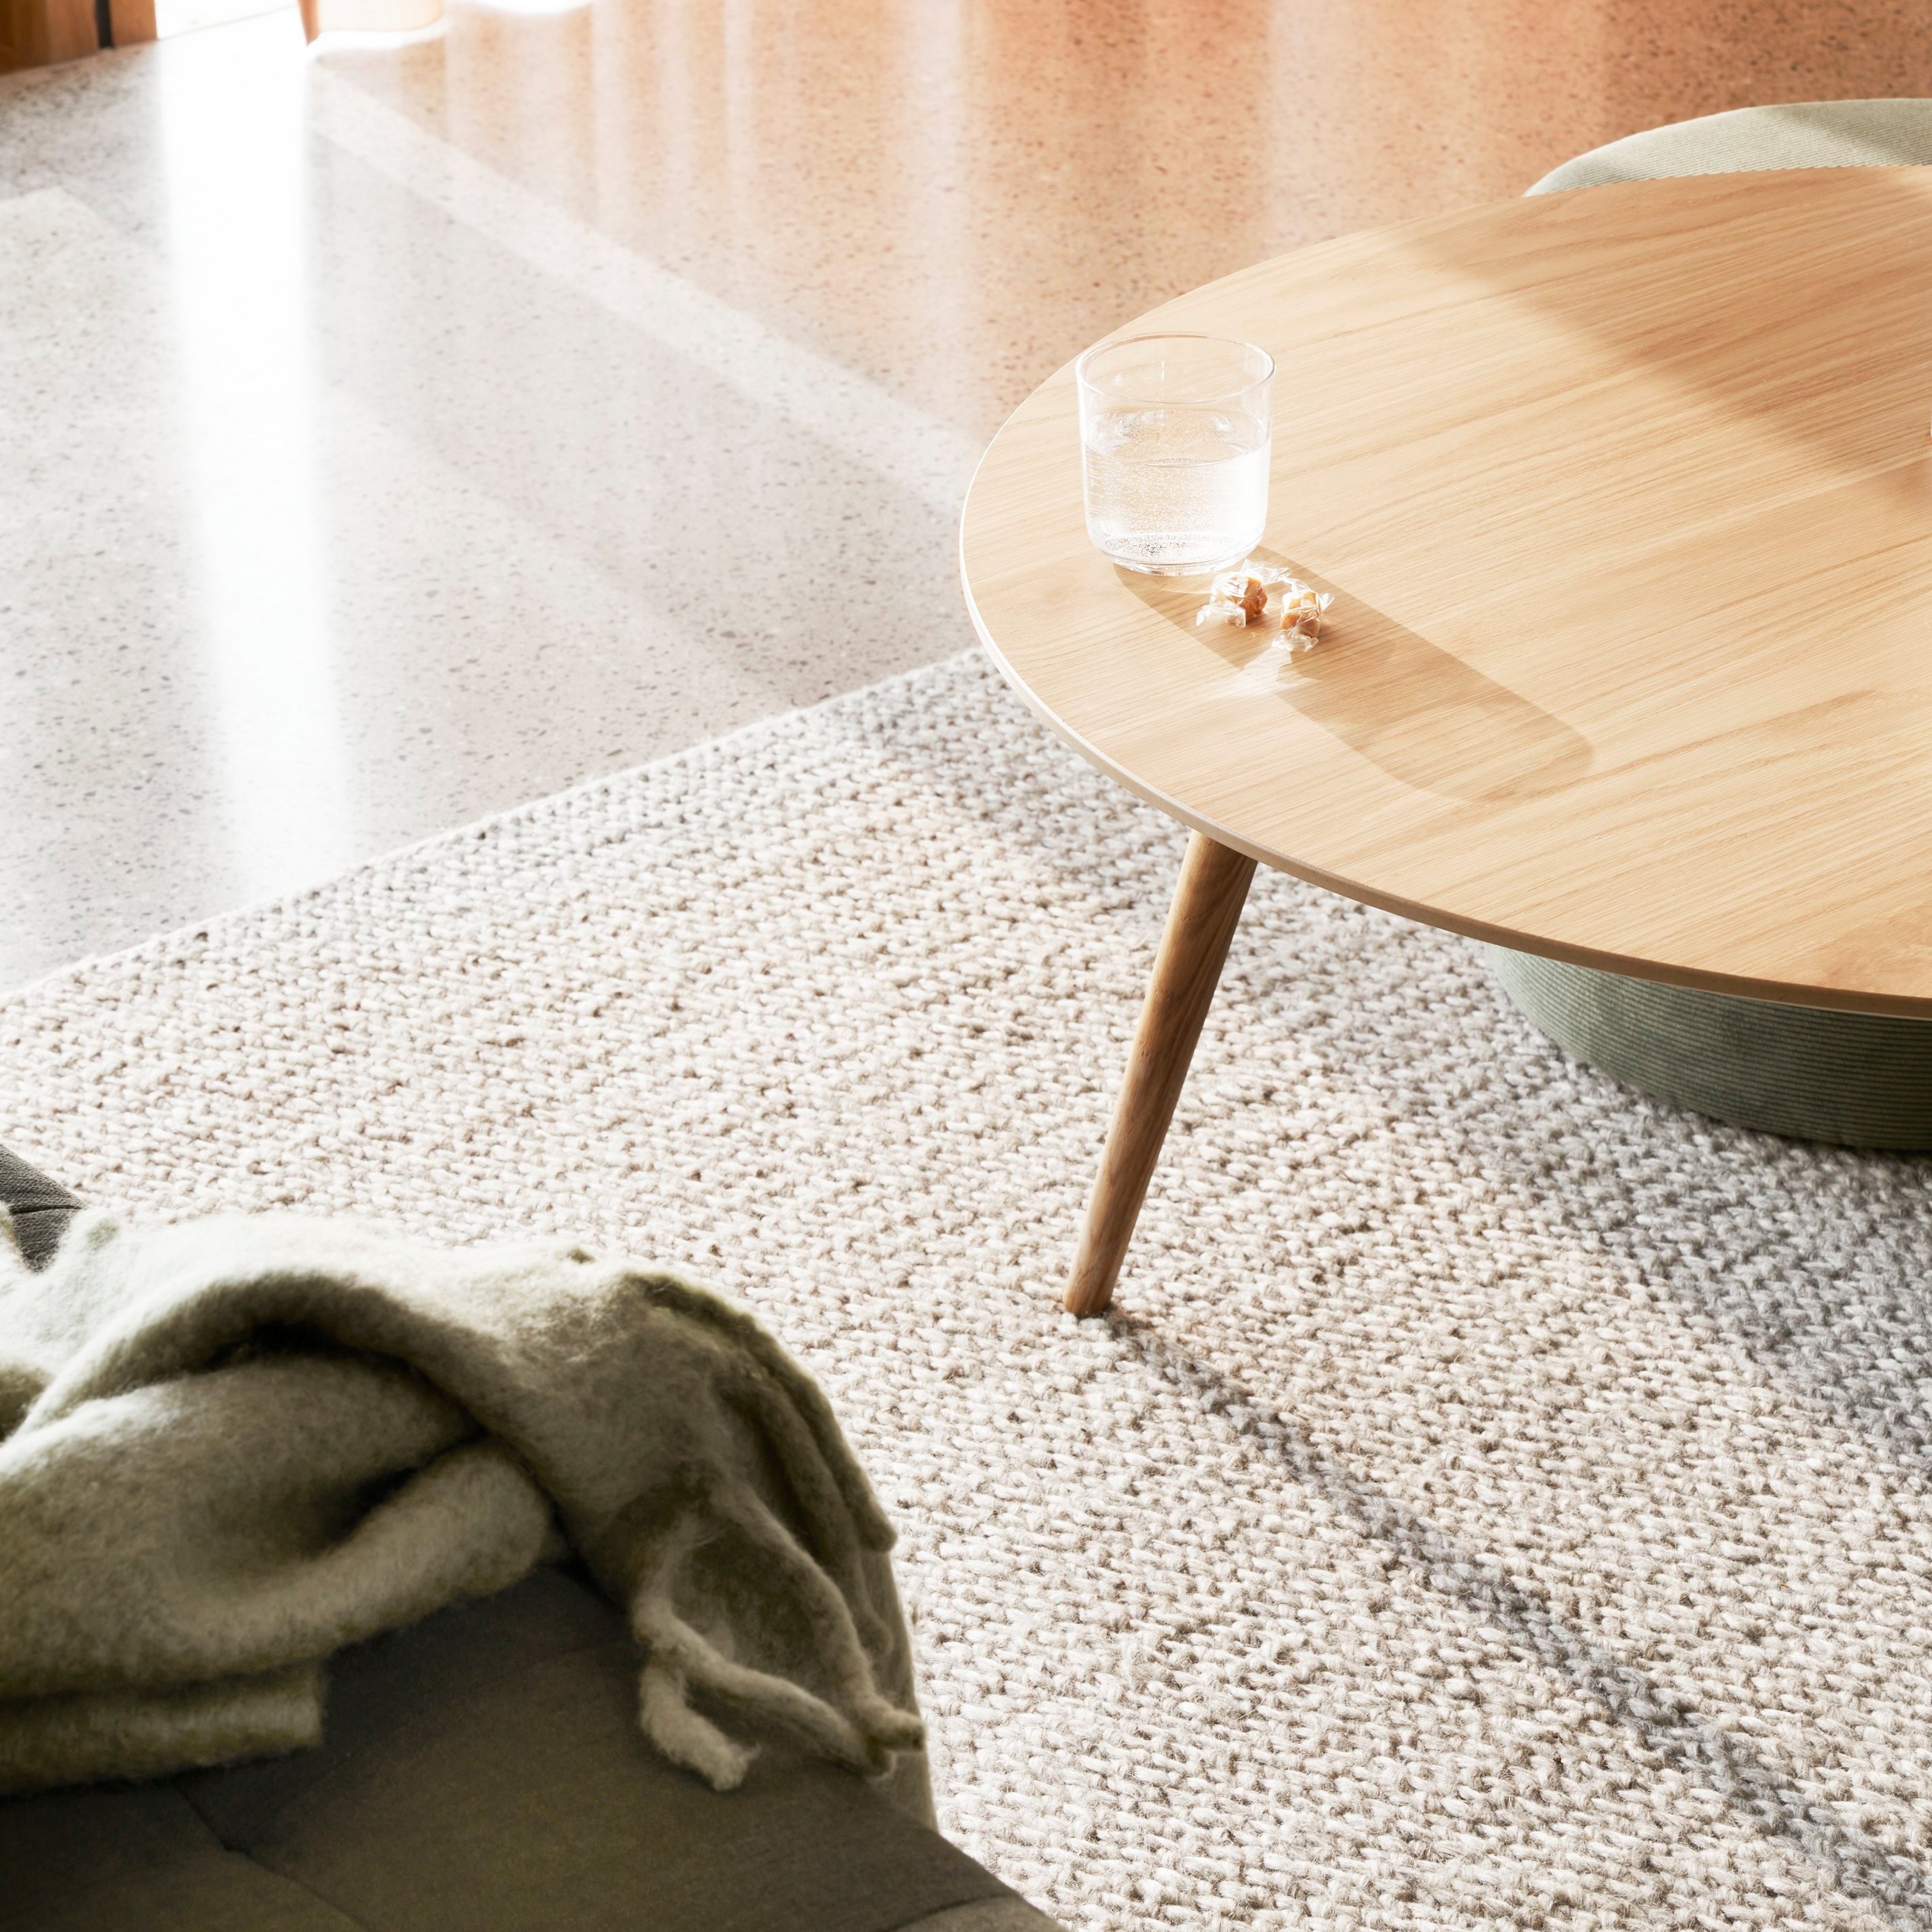 Gestructureerd karpet met een ronde houten tafel, glas water en een zachte plaid in het zonlicht.